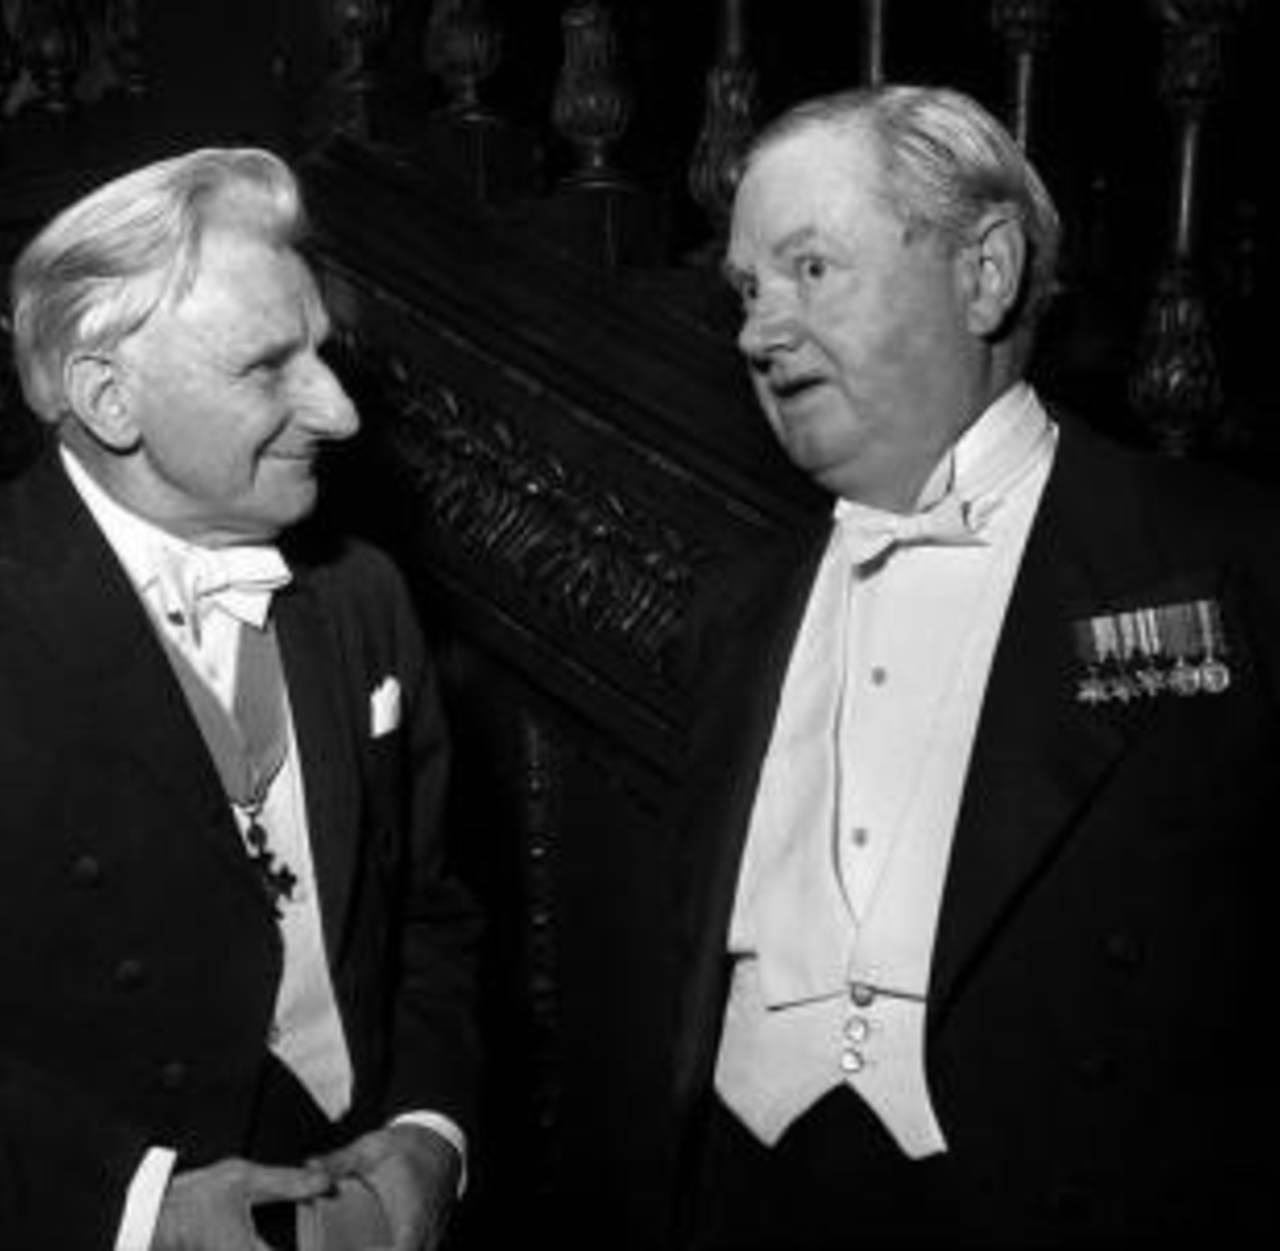 The poet Edmund Blunden (left) and novelist Evelyn Waugh, 25 June 1963